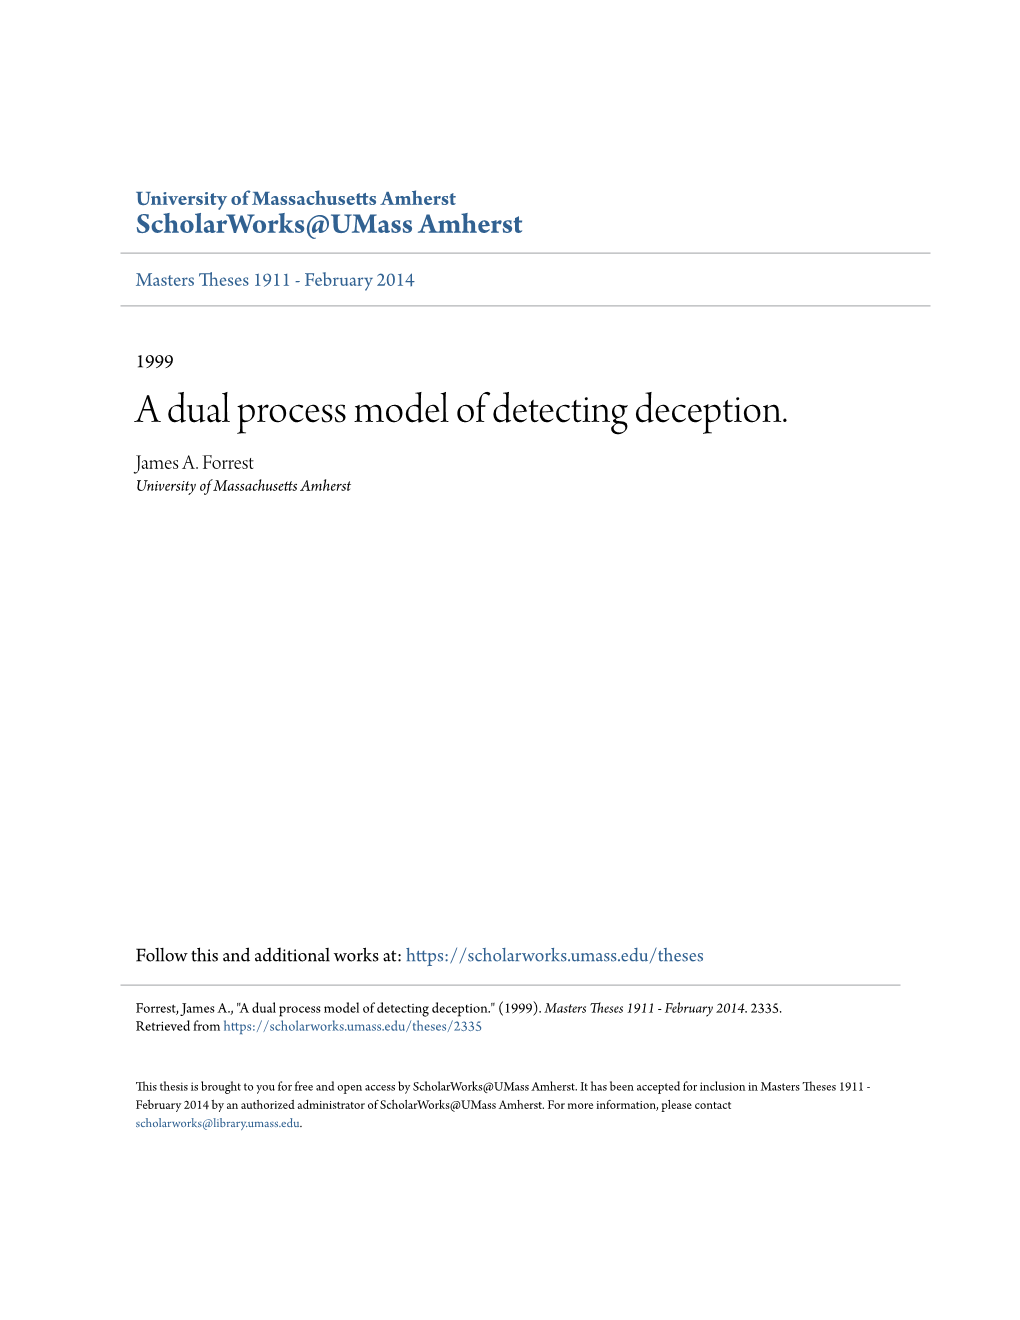 A Dual Process Model of Detecting Deception. James A